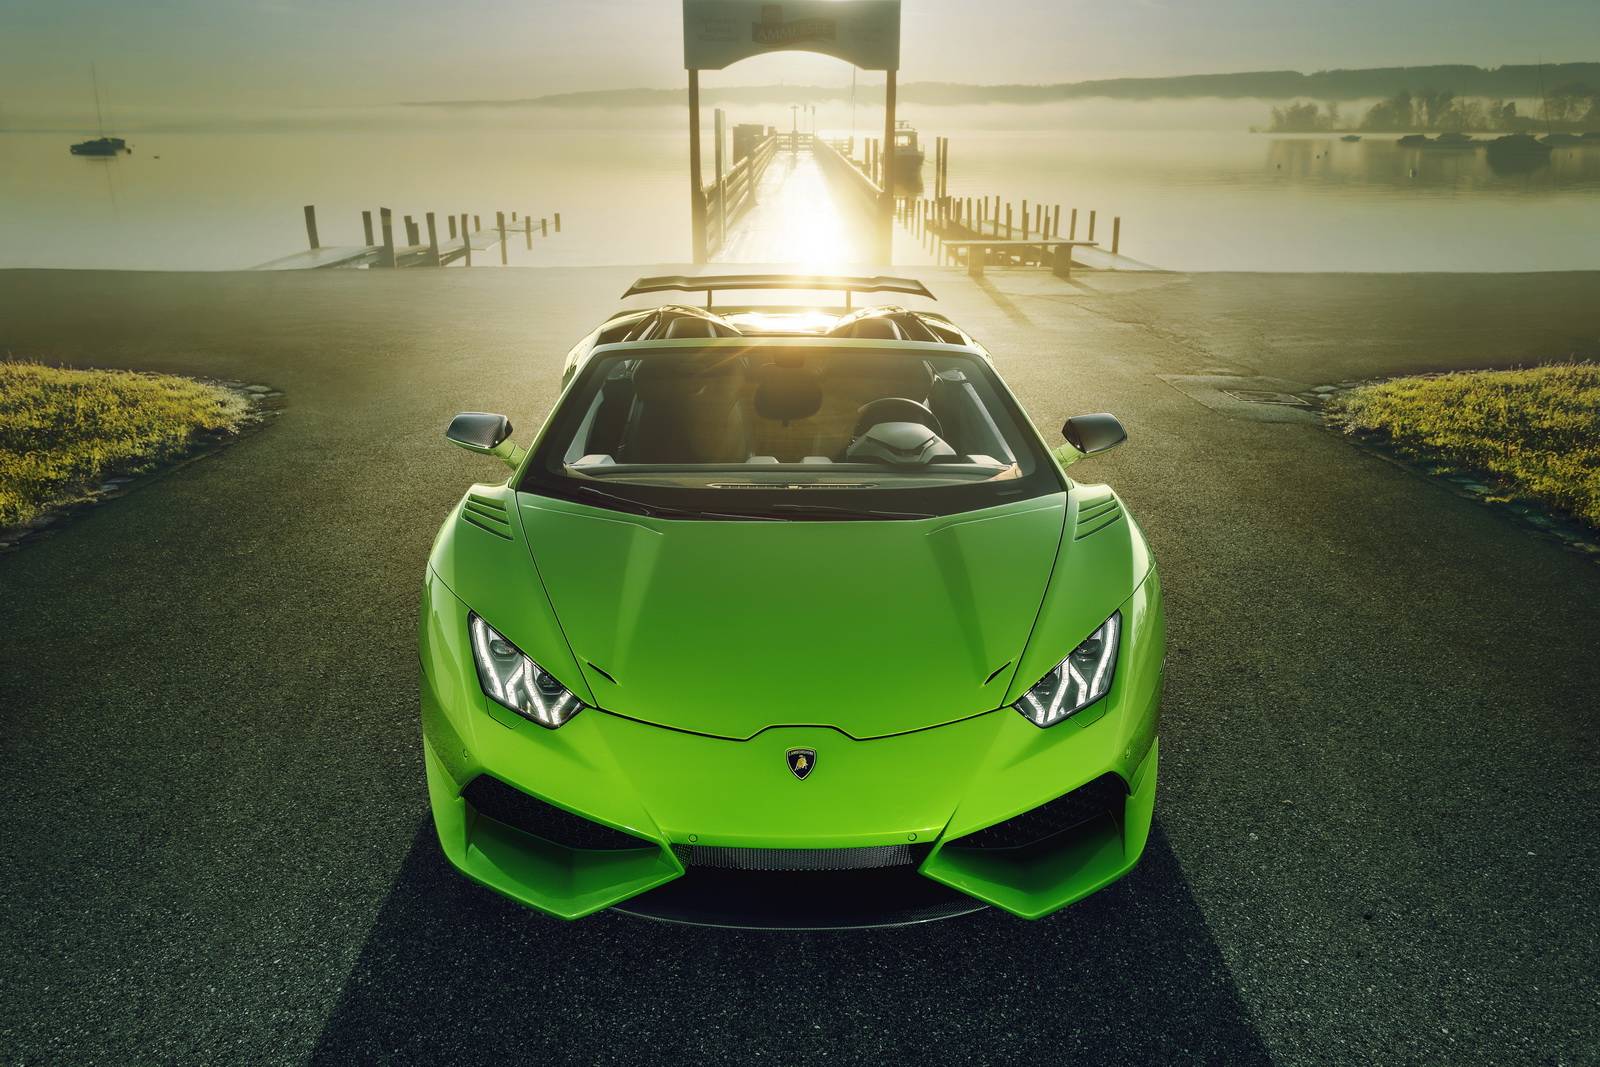 Lamborghini Huracan Spyder - chiếc siêu xe đỉnh cao của sự sang trọng và đẳng cấp. Bạn sẽ không thể rời mắt khỏi bức ảnh này với kiểu dáng của xe cùng với hệ thống đèn pha đầy sáng tạo. Hãy cùng trải nghiệm cảm giác lái chiếc xe này với hình ảnh đẹp vô cùng.